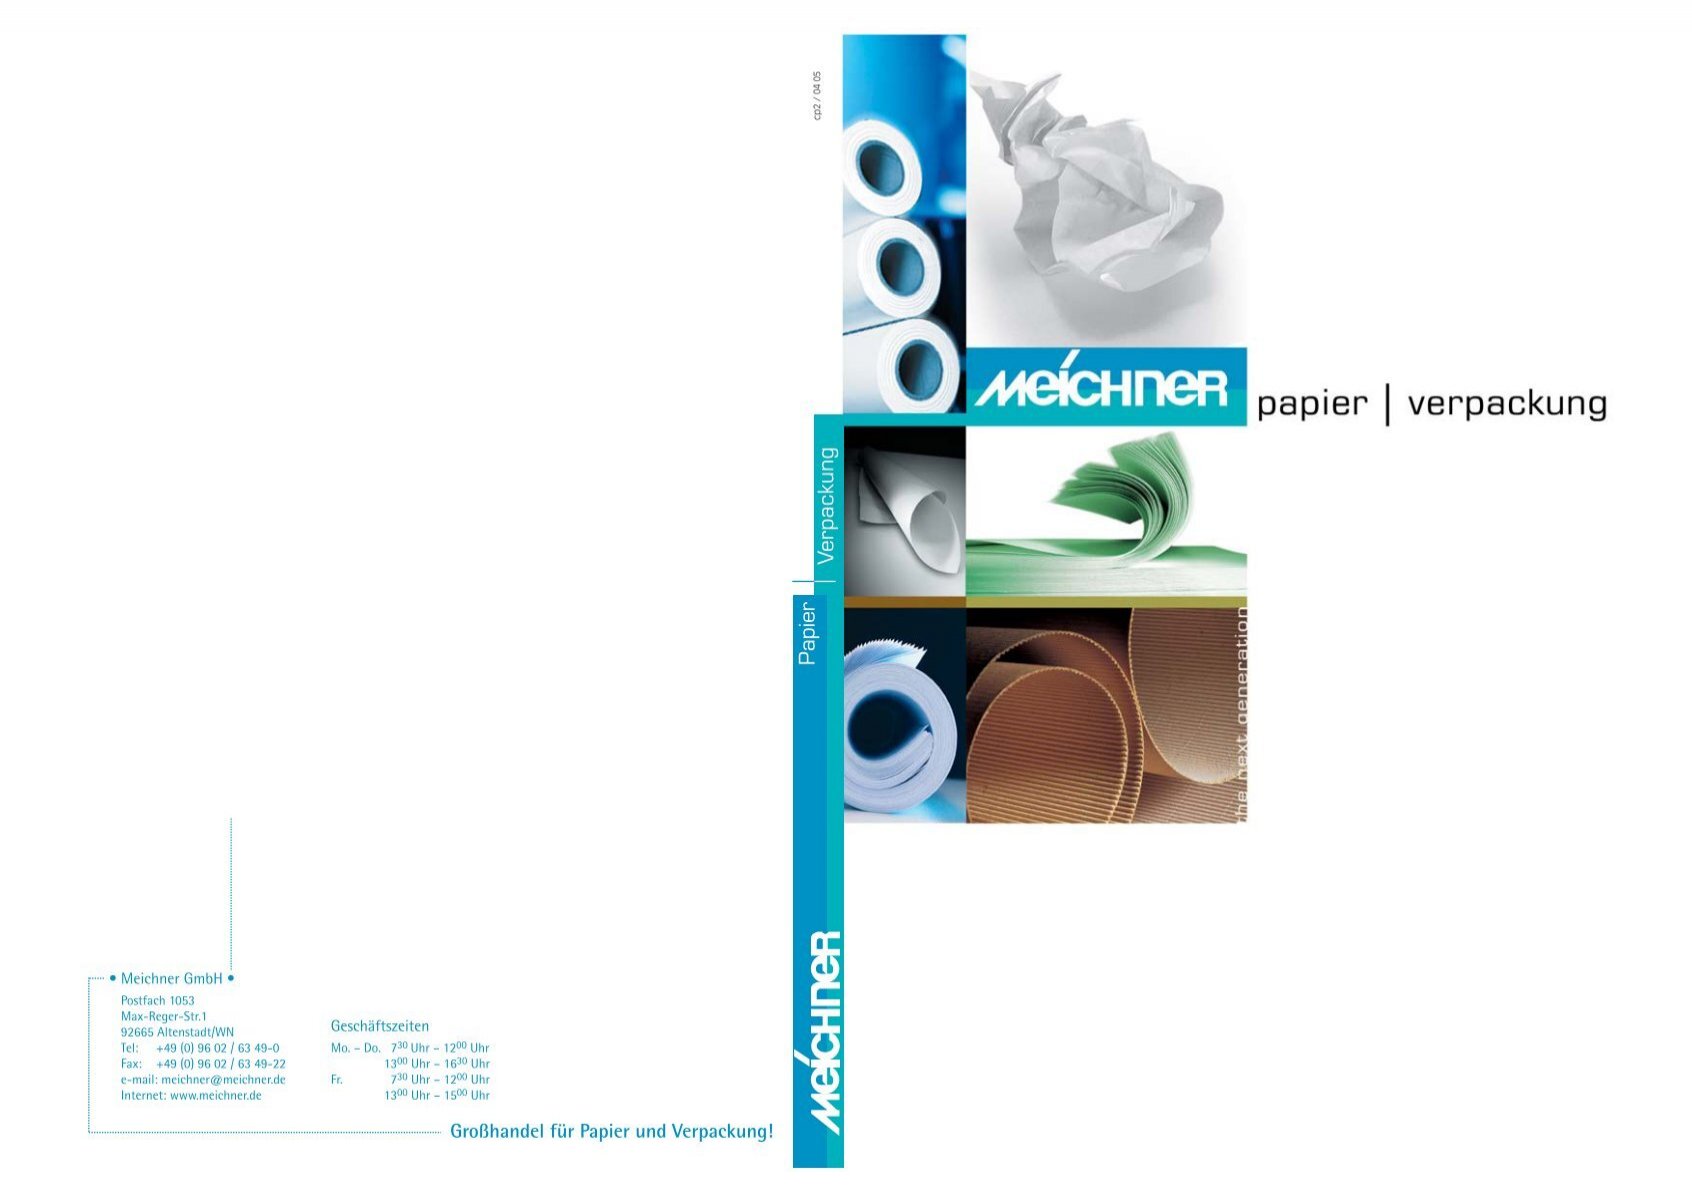 Verpackung, Papier - Meichner GmbH